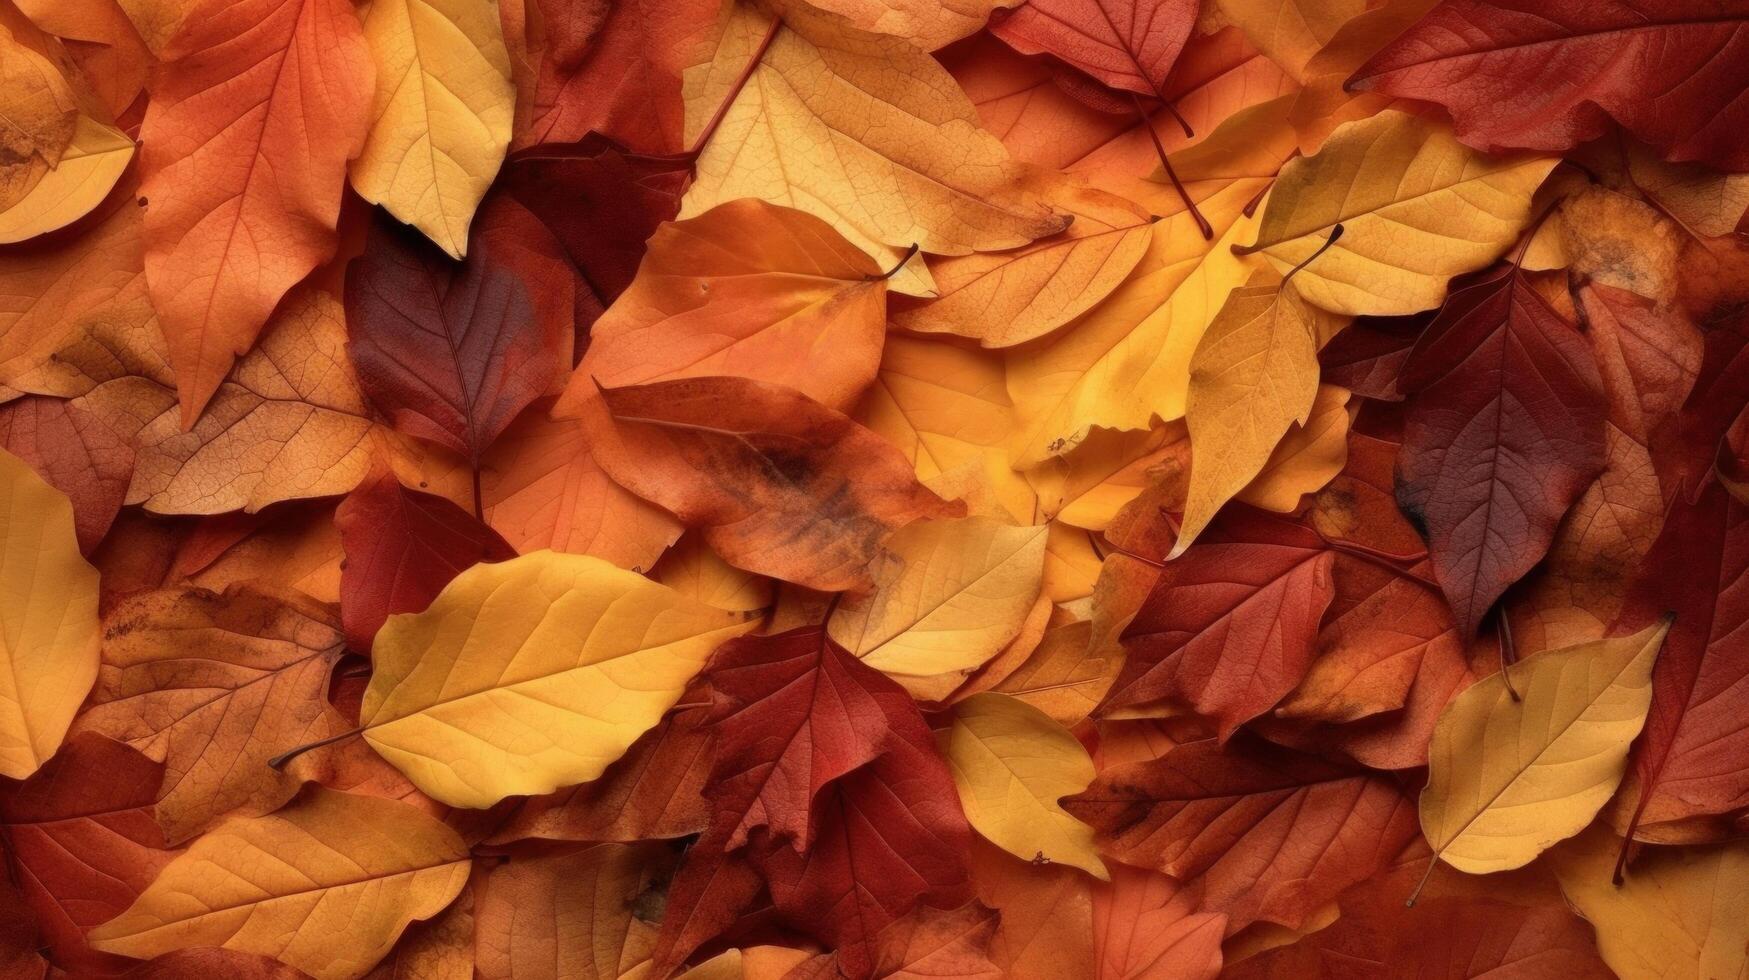 Autumn falling leaves background. Illustration photo